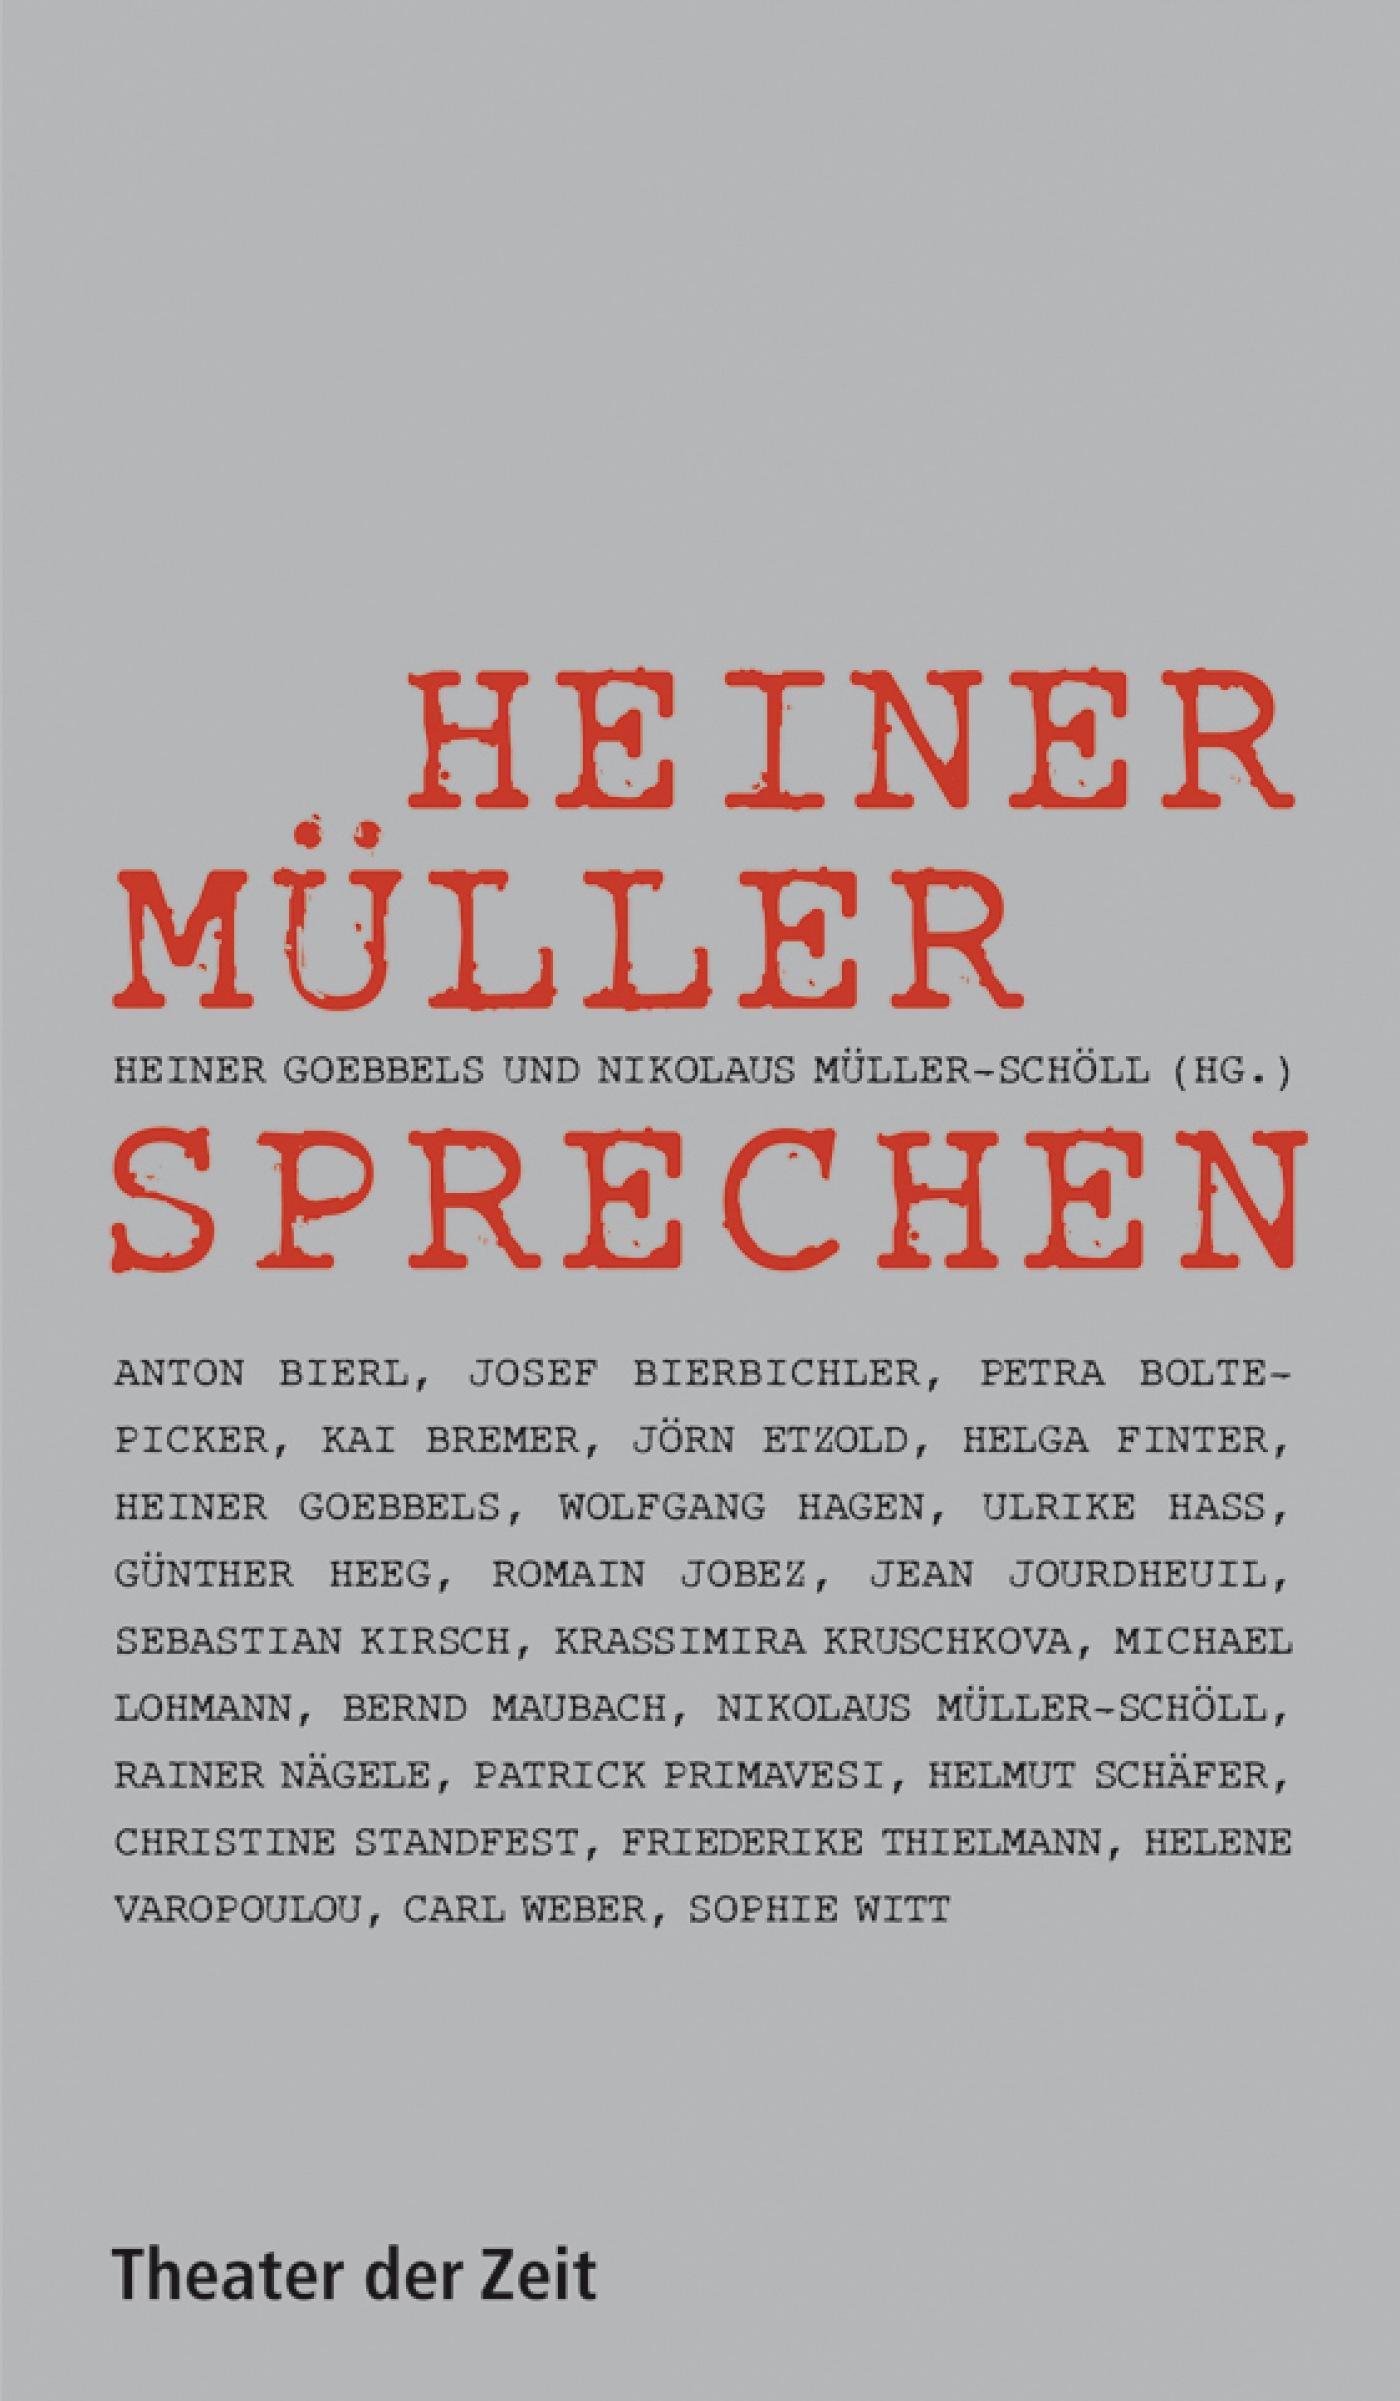 Recherchen 69 "Heiner Müller sprechen"